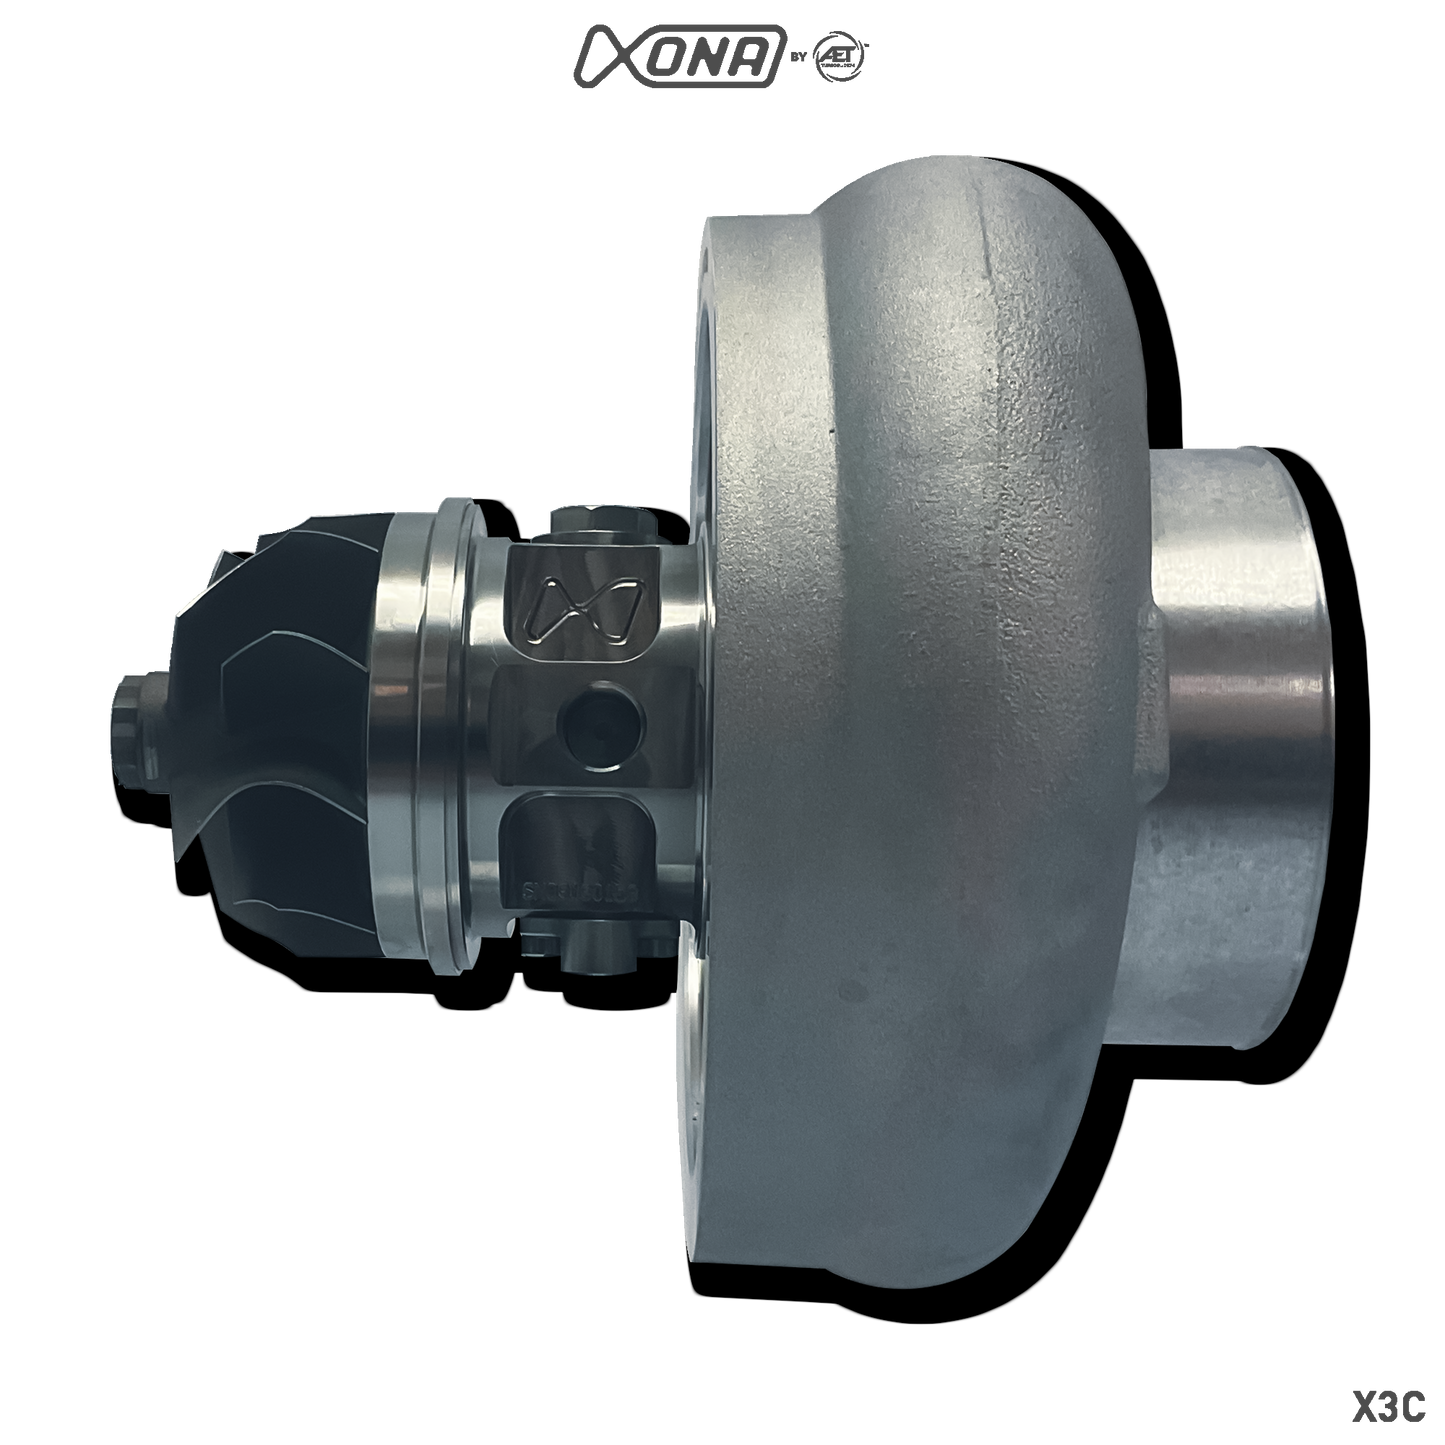 Xona Rotor X3C XR7869S | 410-820 bhp | Performance Turbo